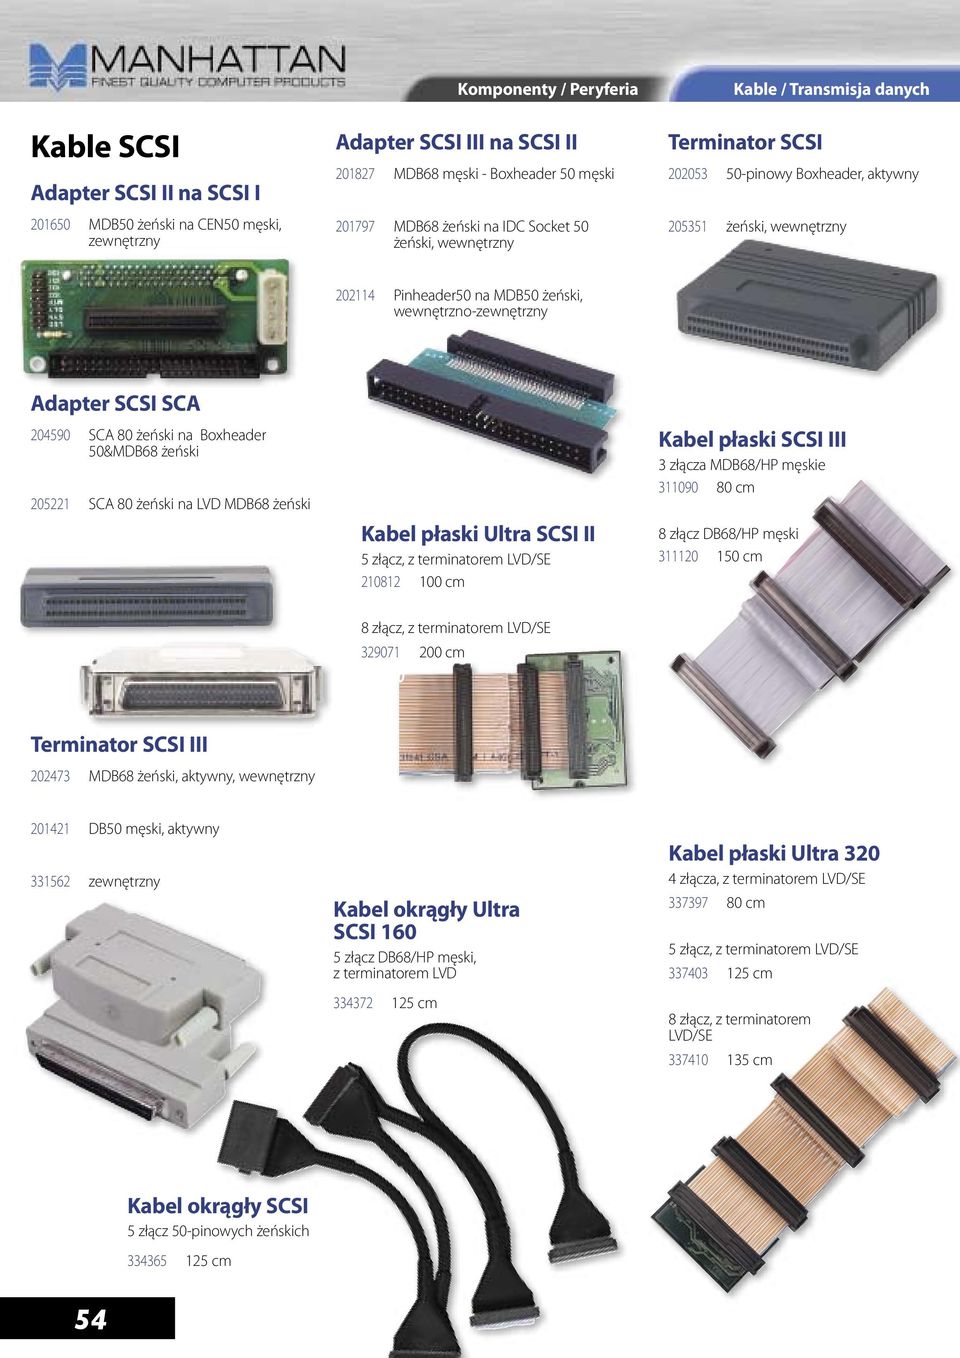 6,95 205351 żeński, wewnętrzny Ä 14,00 Adapter SCSI SCA 204590 SCA 80 żeński na Boxheader 50&MDB68 żeński Ä 15,95 205221 SCA 80 żeński na LVD MDB68 żeński Ä 15,95 Kabel płaski Ultra SCSI II 5 złącz,